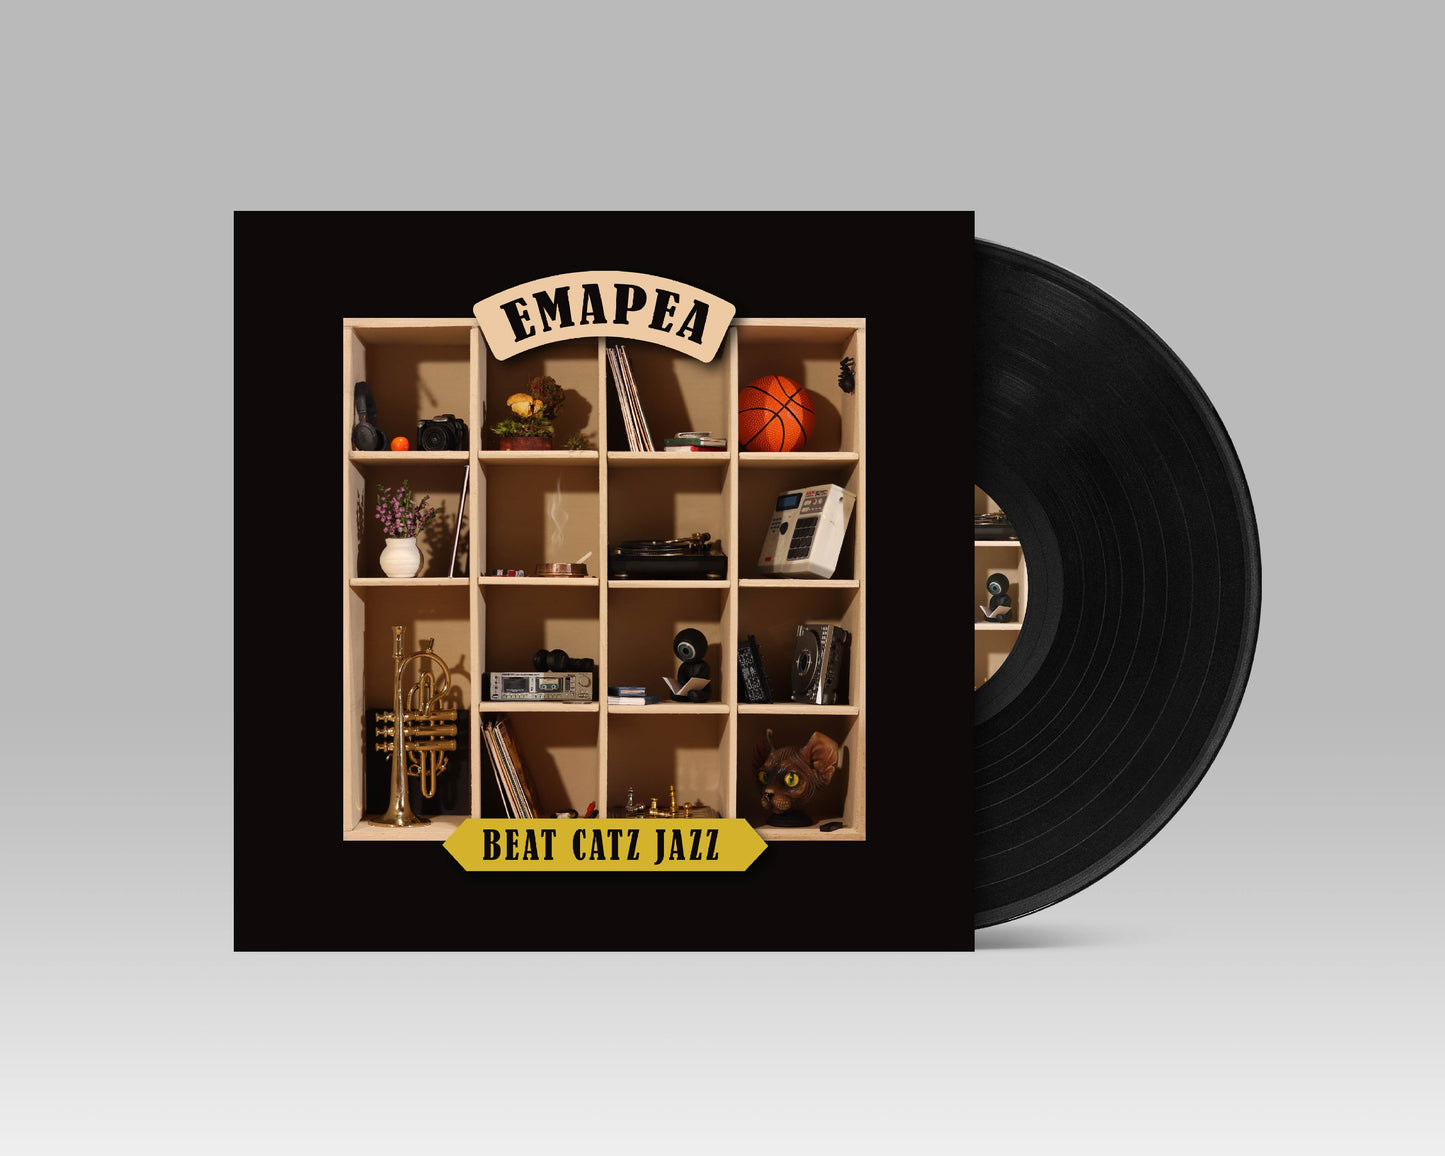 Beat Catz Jazz - Emapea Vinyl LP Front Black 